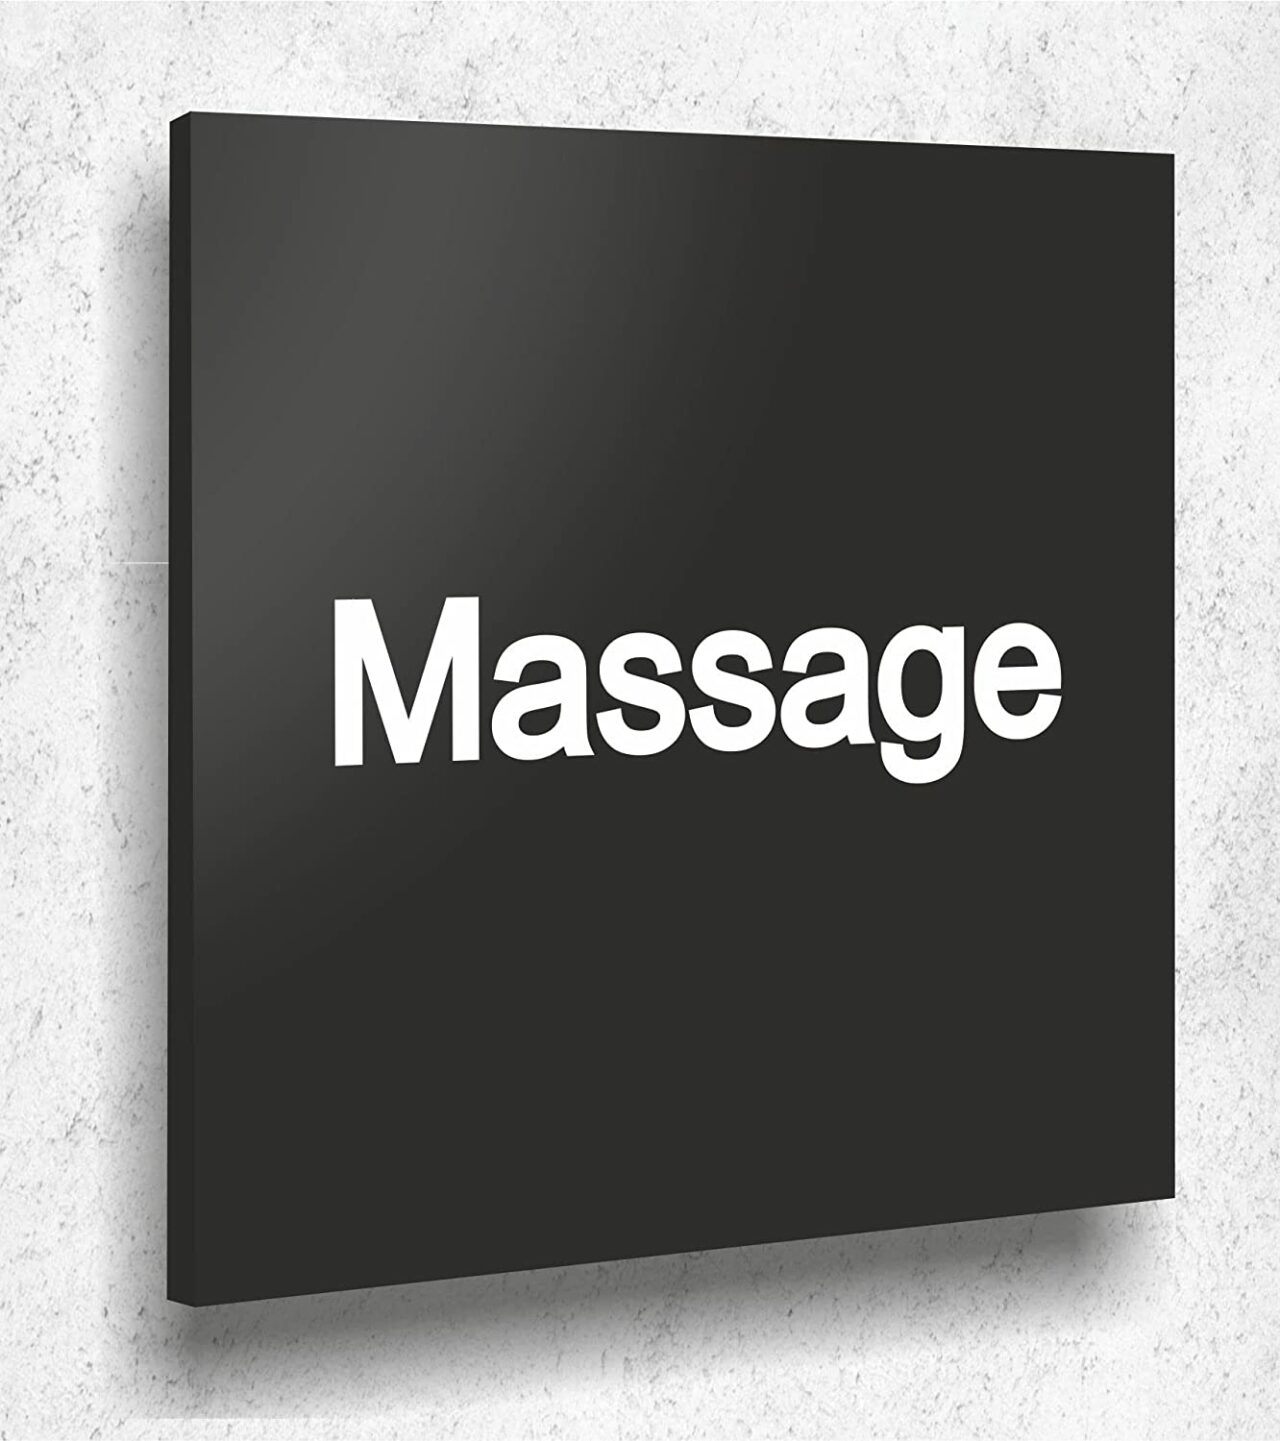 Türschild Massage Schild Schwarz Matt UV Druck 12 x 12cm - 3mm Acrylglas - Made in Germany Art.Nr. A 2049